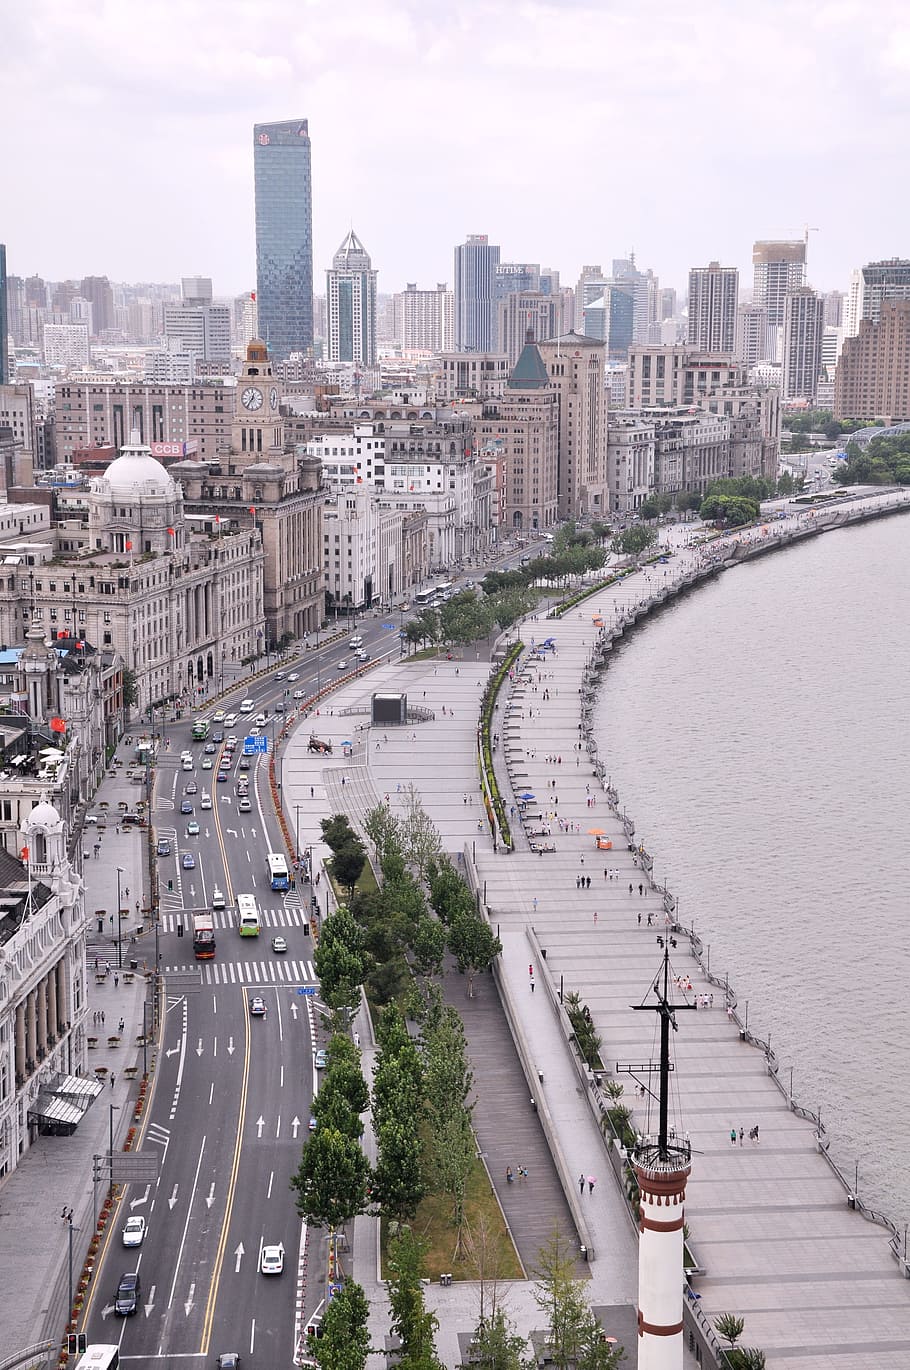 Xangai, Edifício, Rua, The Bund, cidade, edifícios altos, rio huangpu, paisagem urbana, cena urbana, tráfego